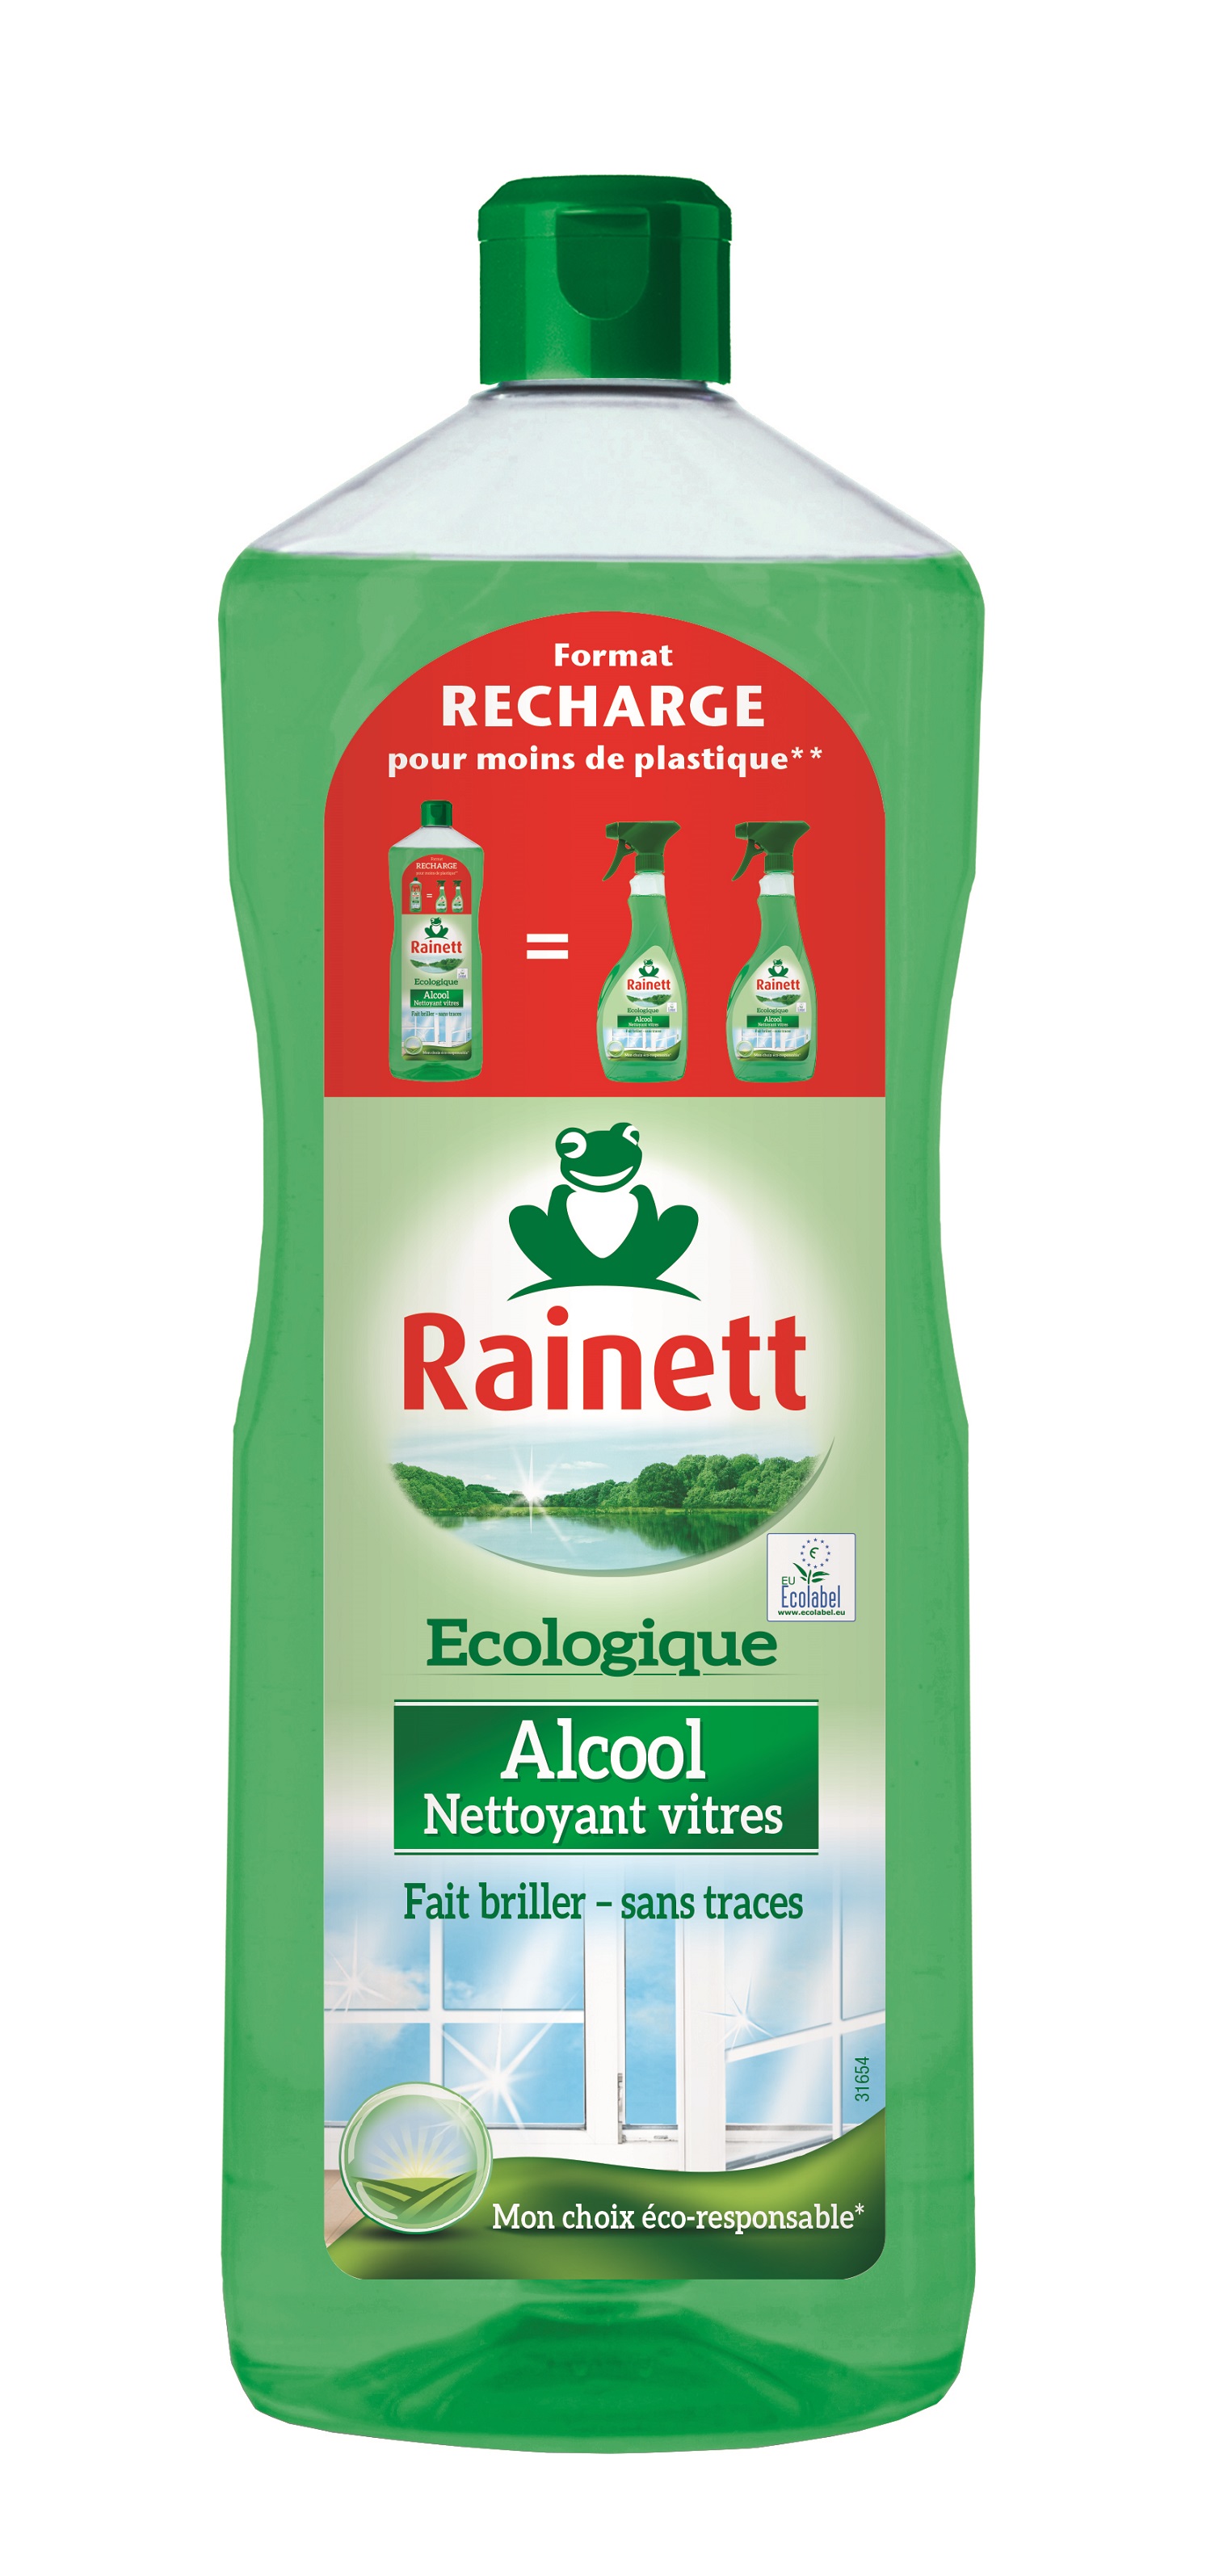 Nettoyant vitres écologique alcool, Rainett (1 l)  La Belle Vie : Courses  en Ligne - Livraison à Domicile